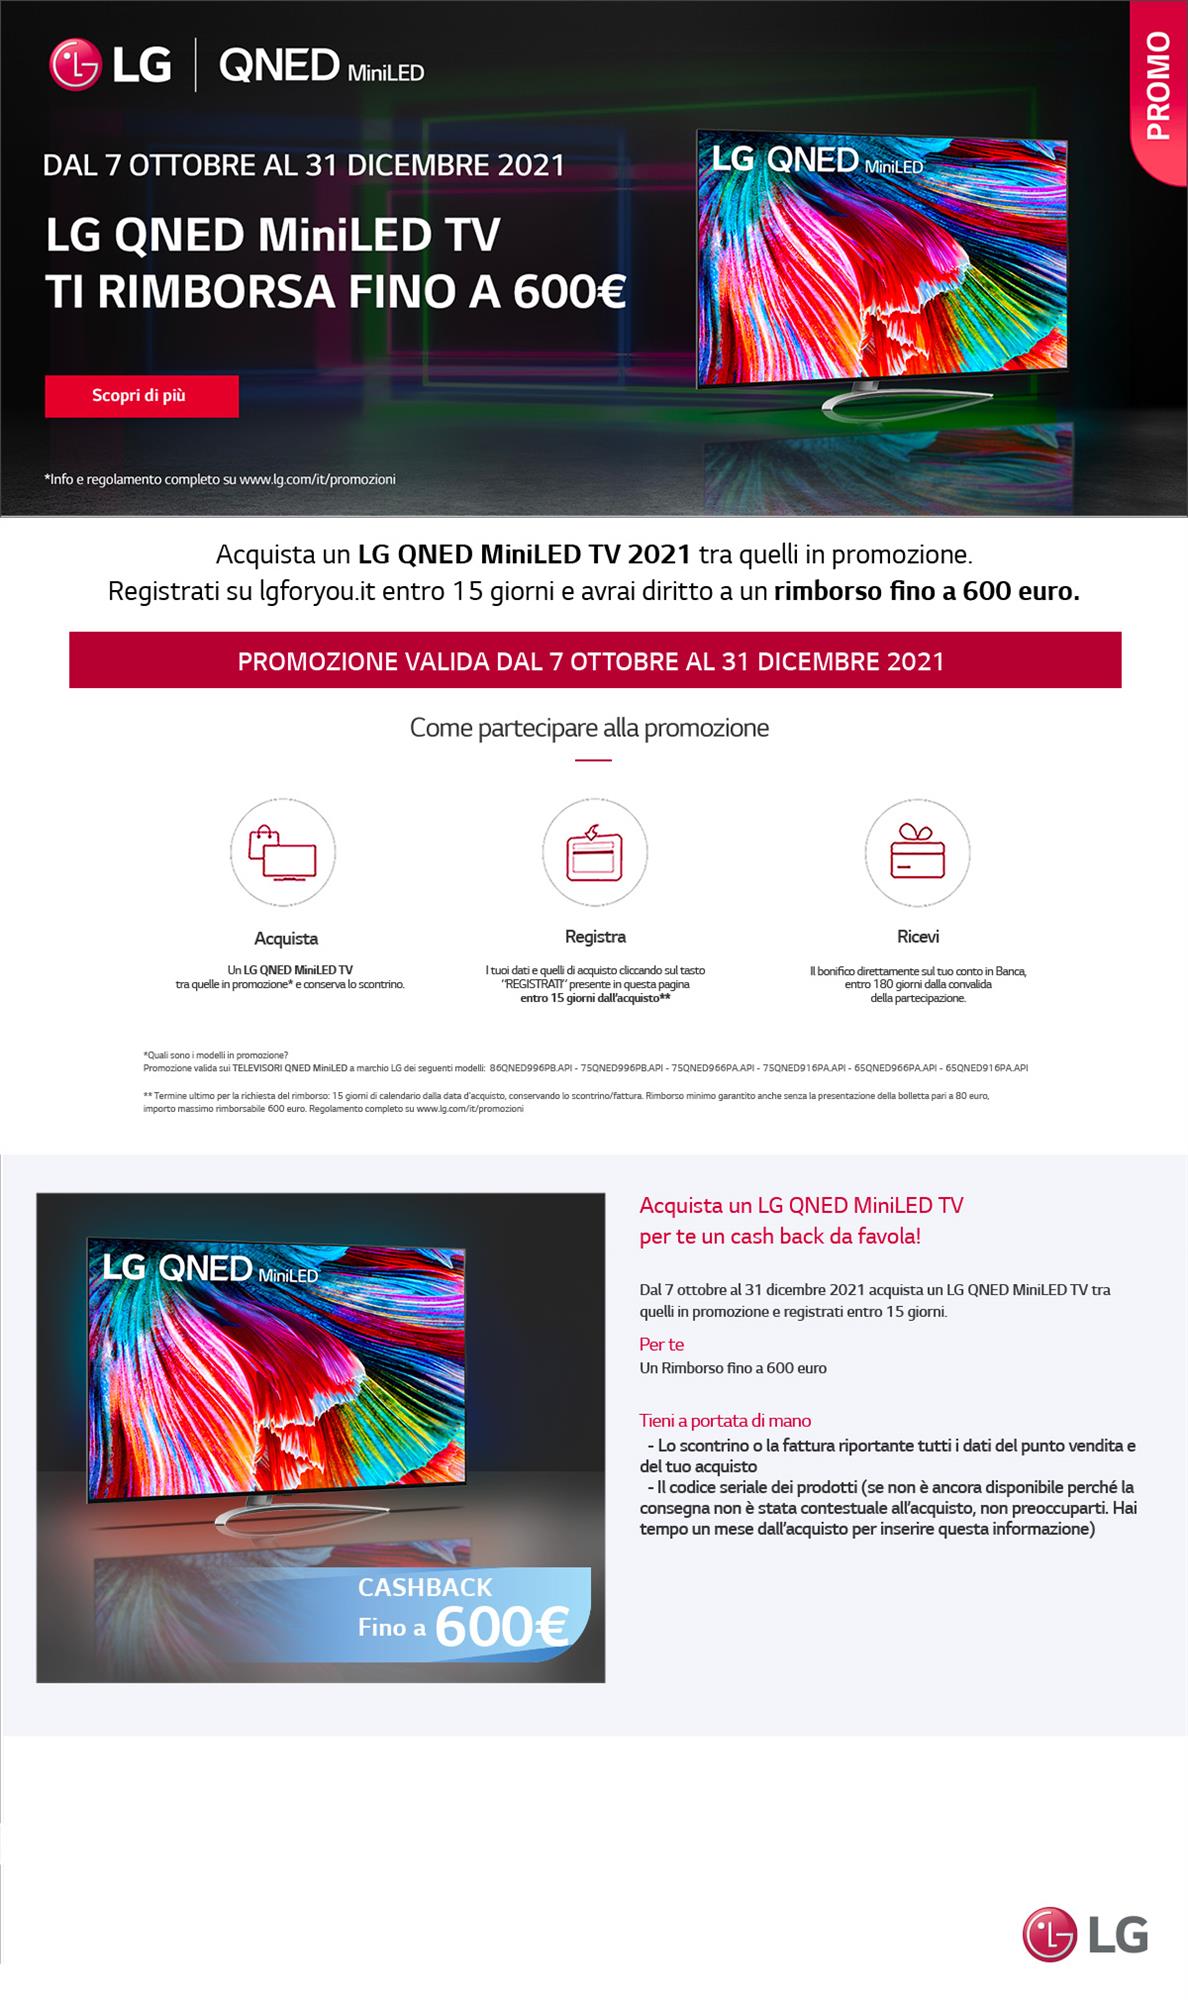 LG QNED MiniLED TV Ti rimborsa fino a 600 euro